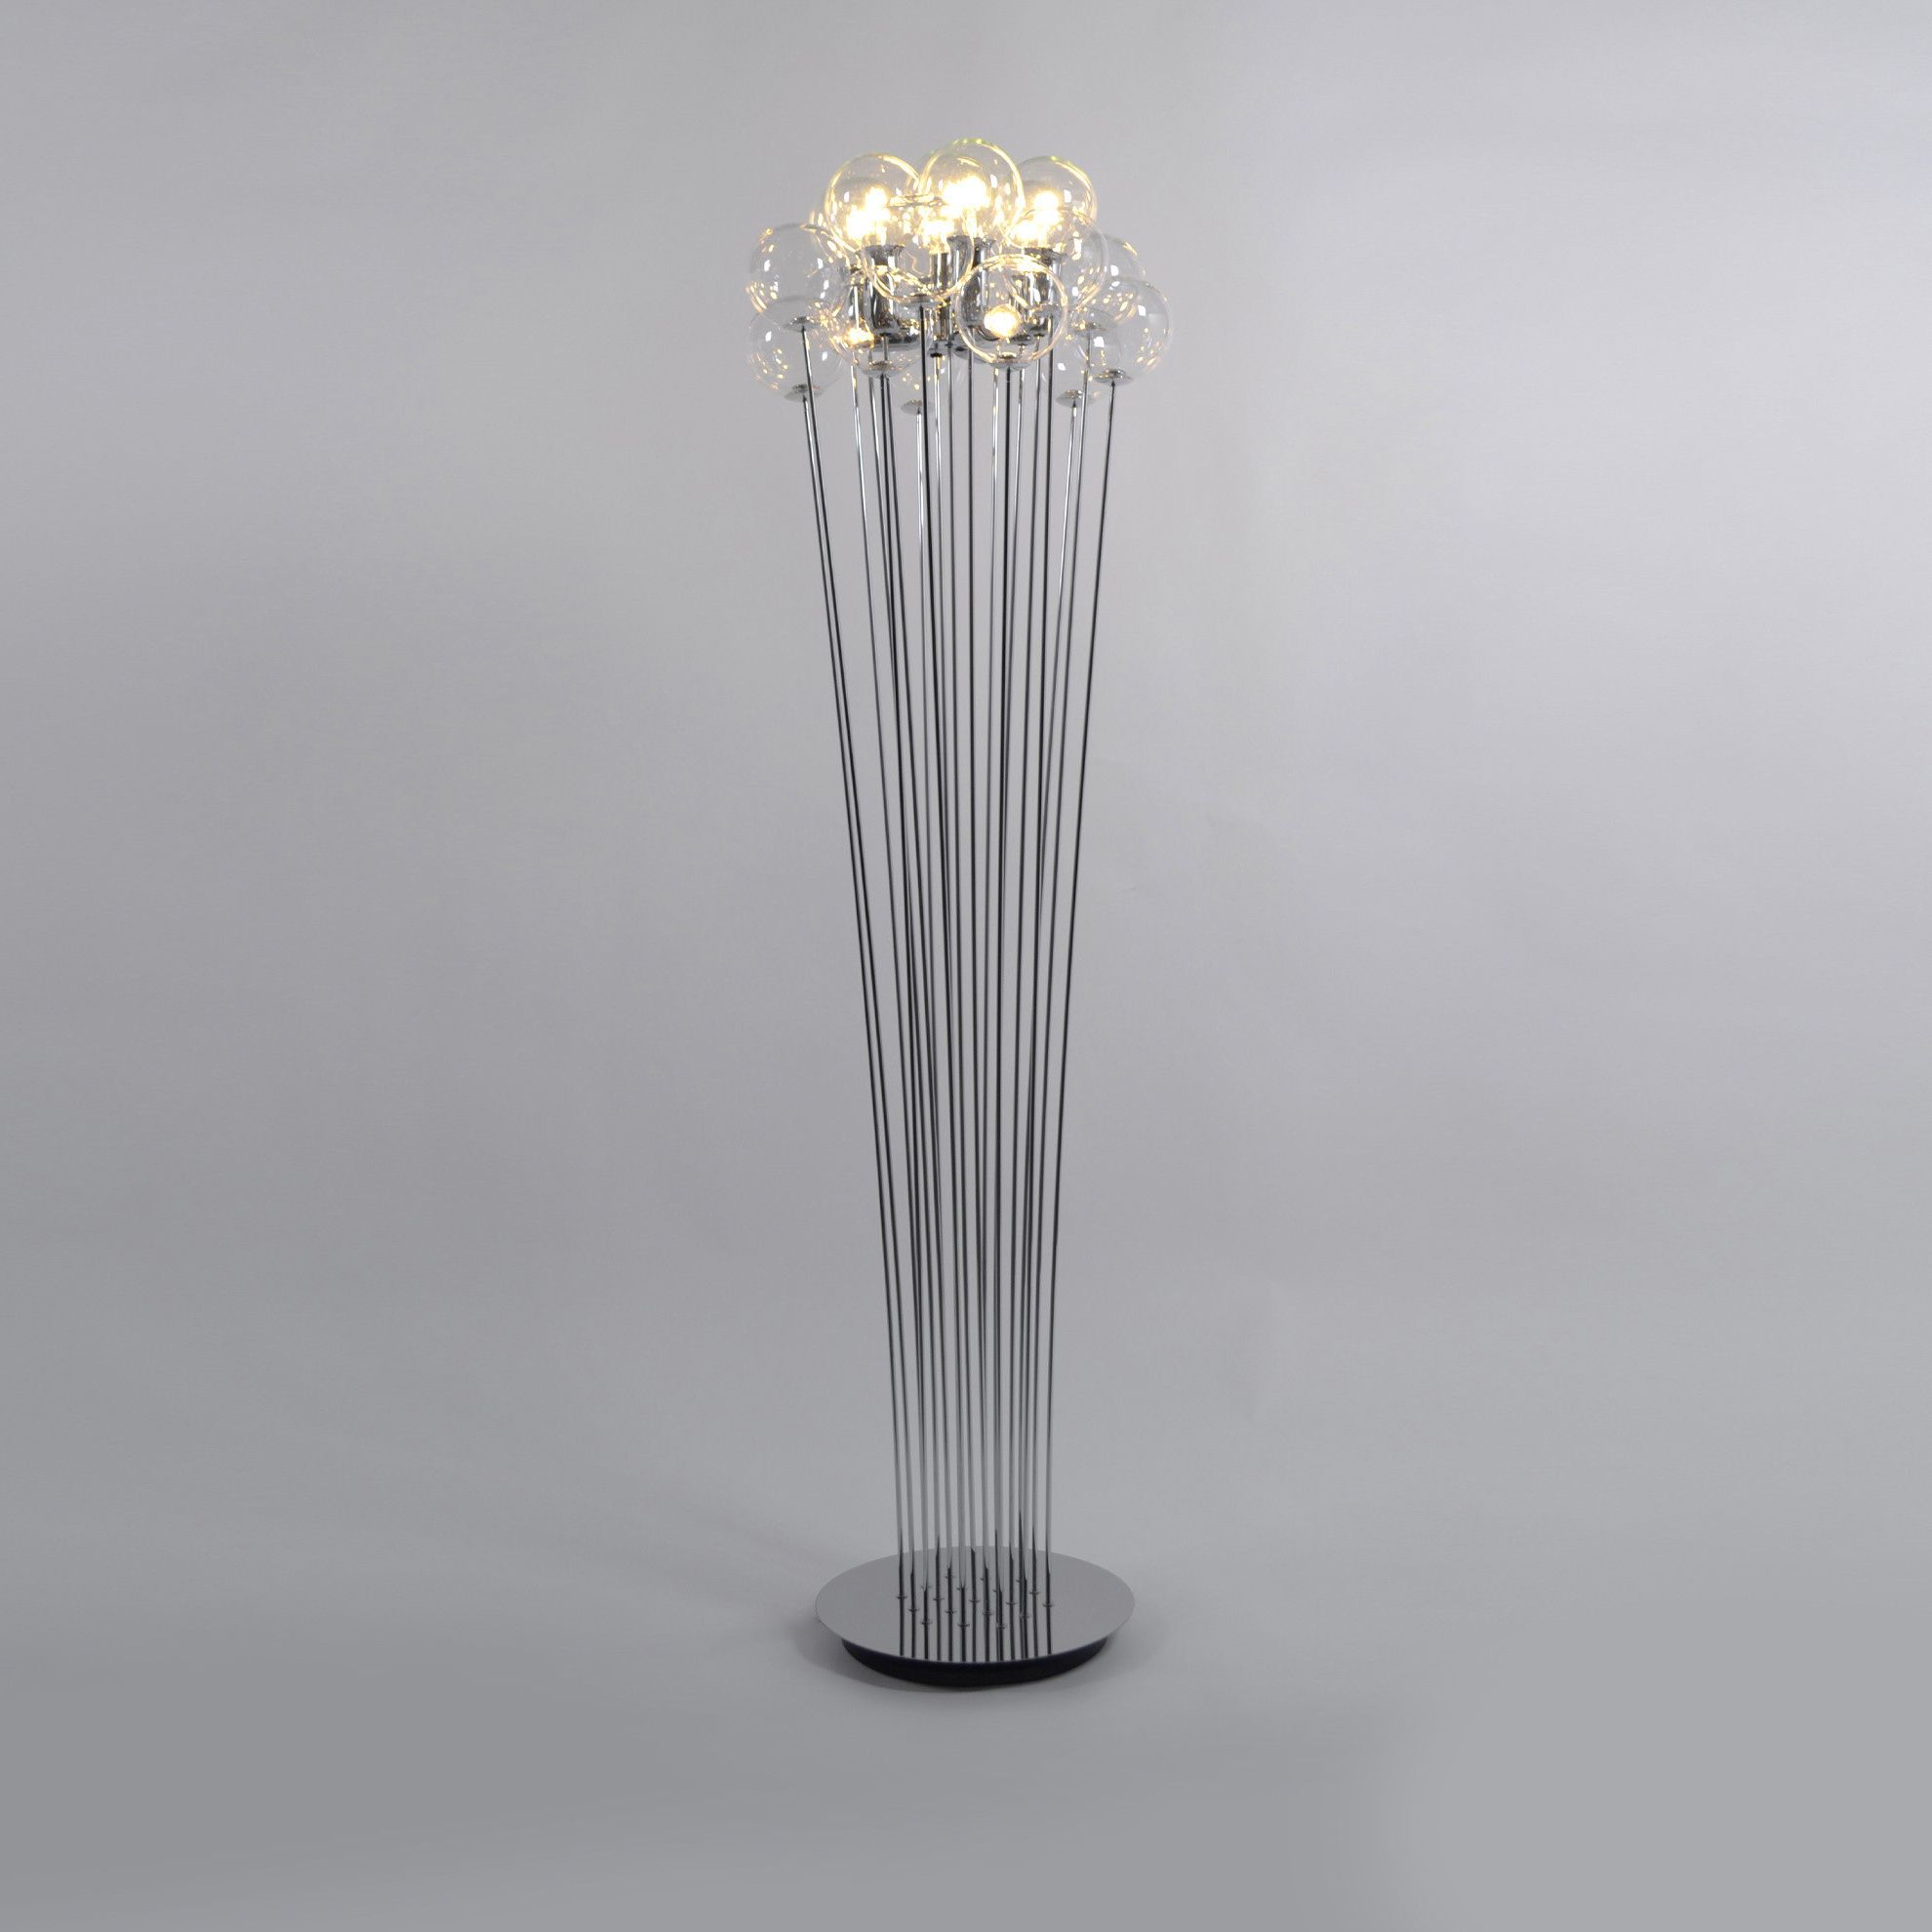 Sphere Floor Lampsp Light | Designer Italian Floor Lamps | Imaestri For Sphere Floor Lamps (View 8 of 20)